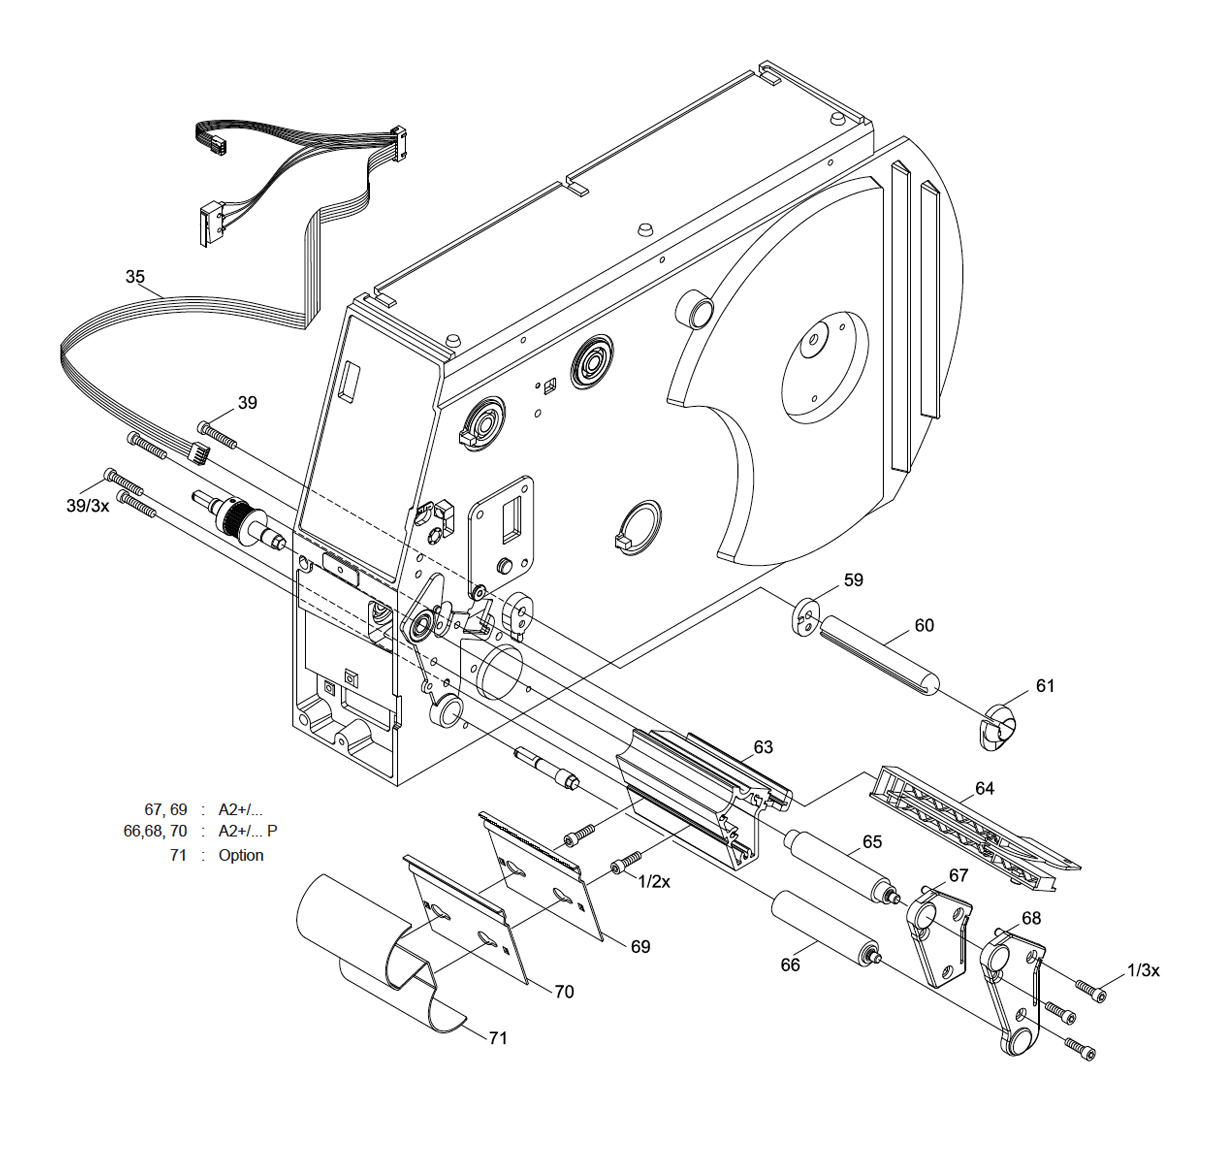 Print Roller Assembly, Label Sensor